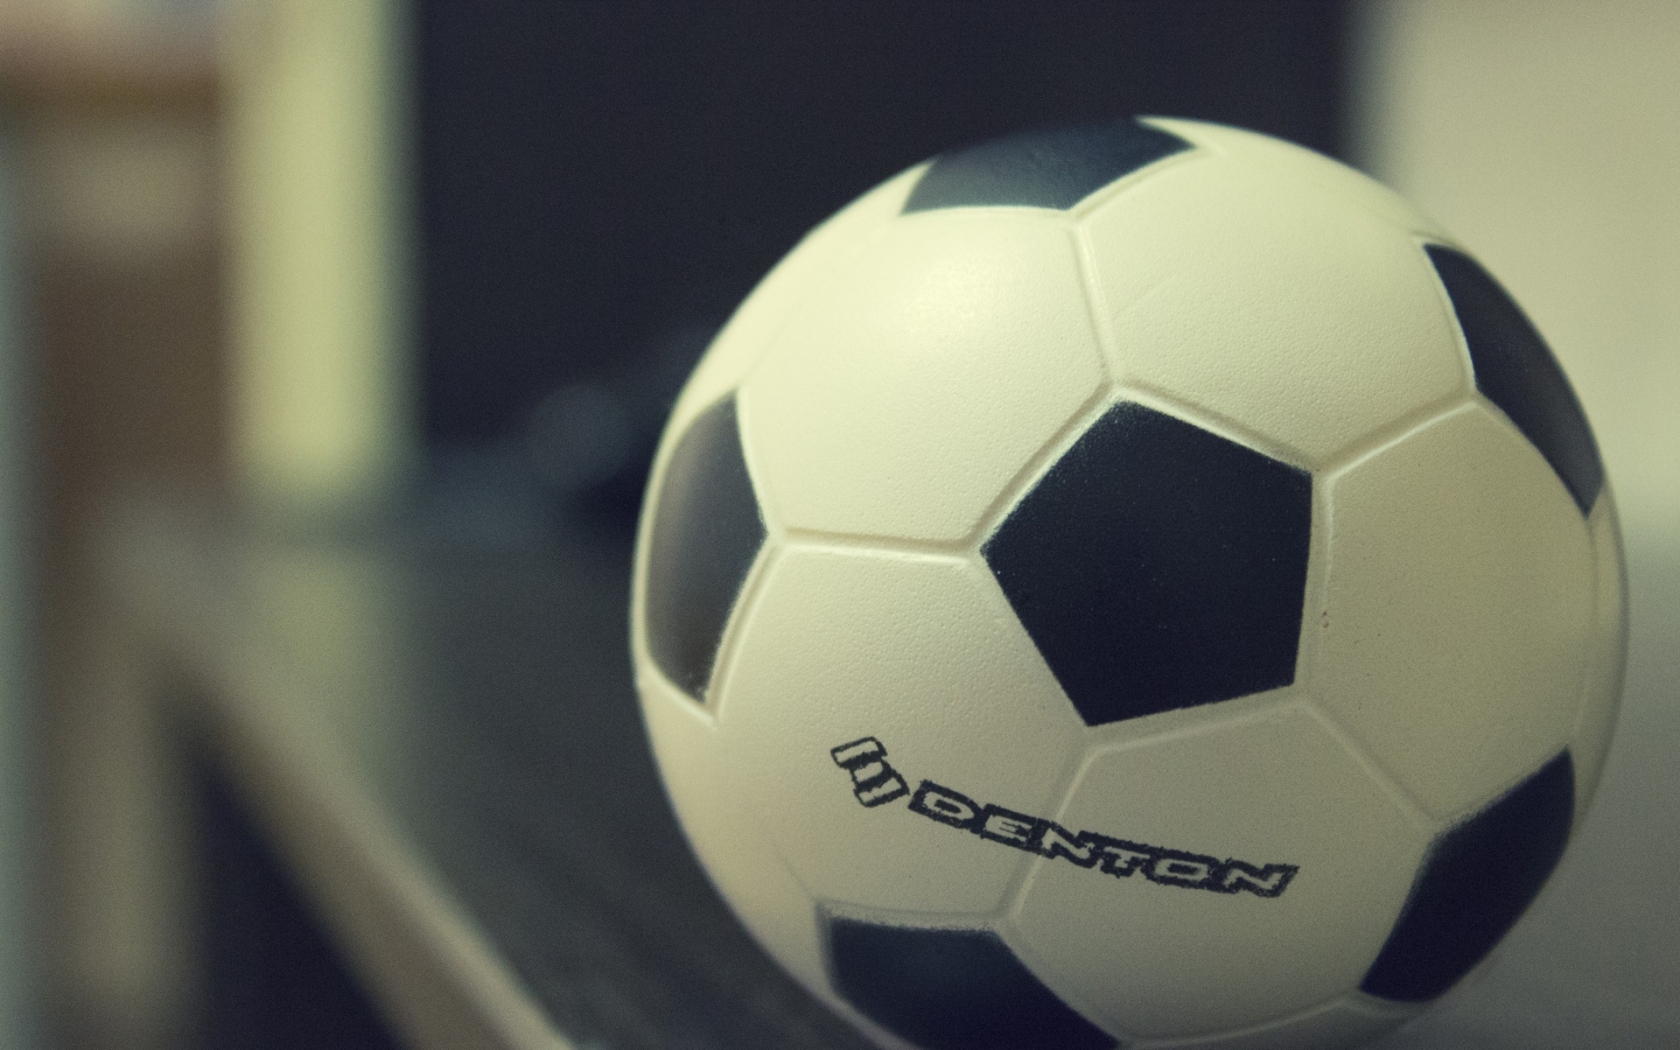 Denton Soccer Ball for 1680 x 1050 widescreen resolution